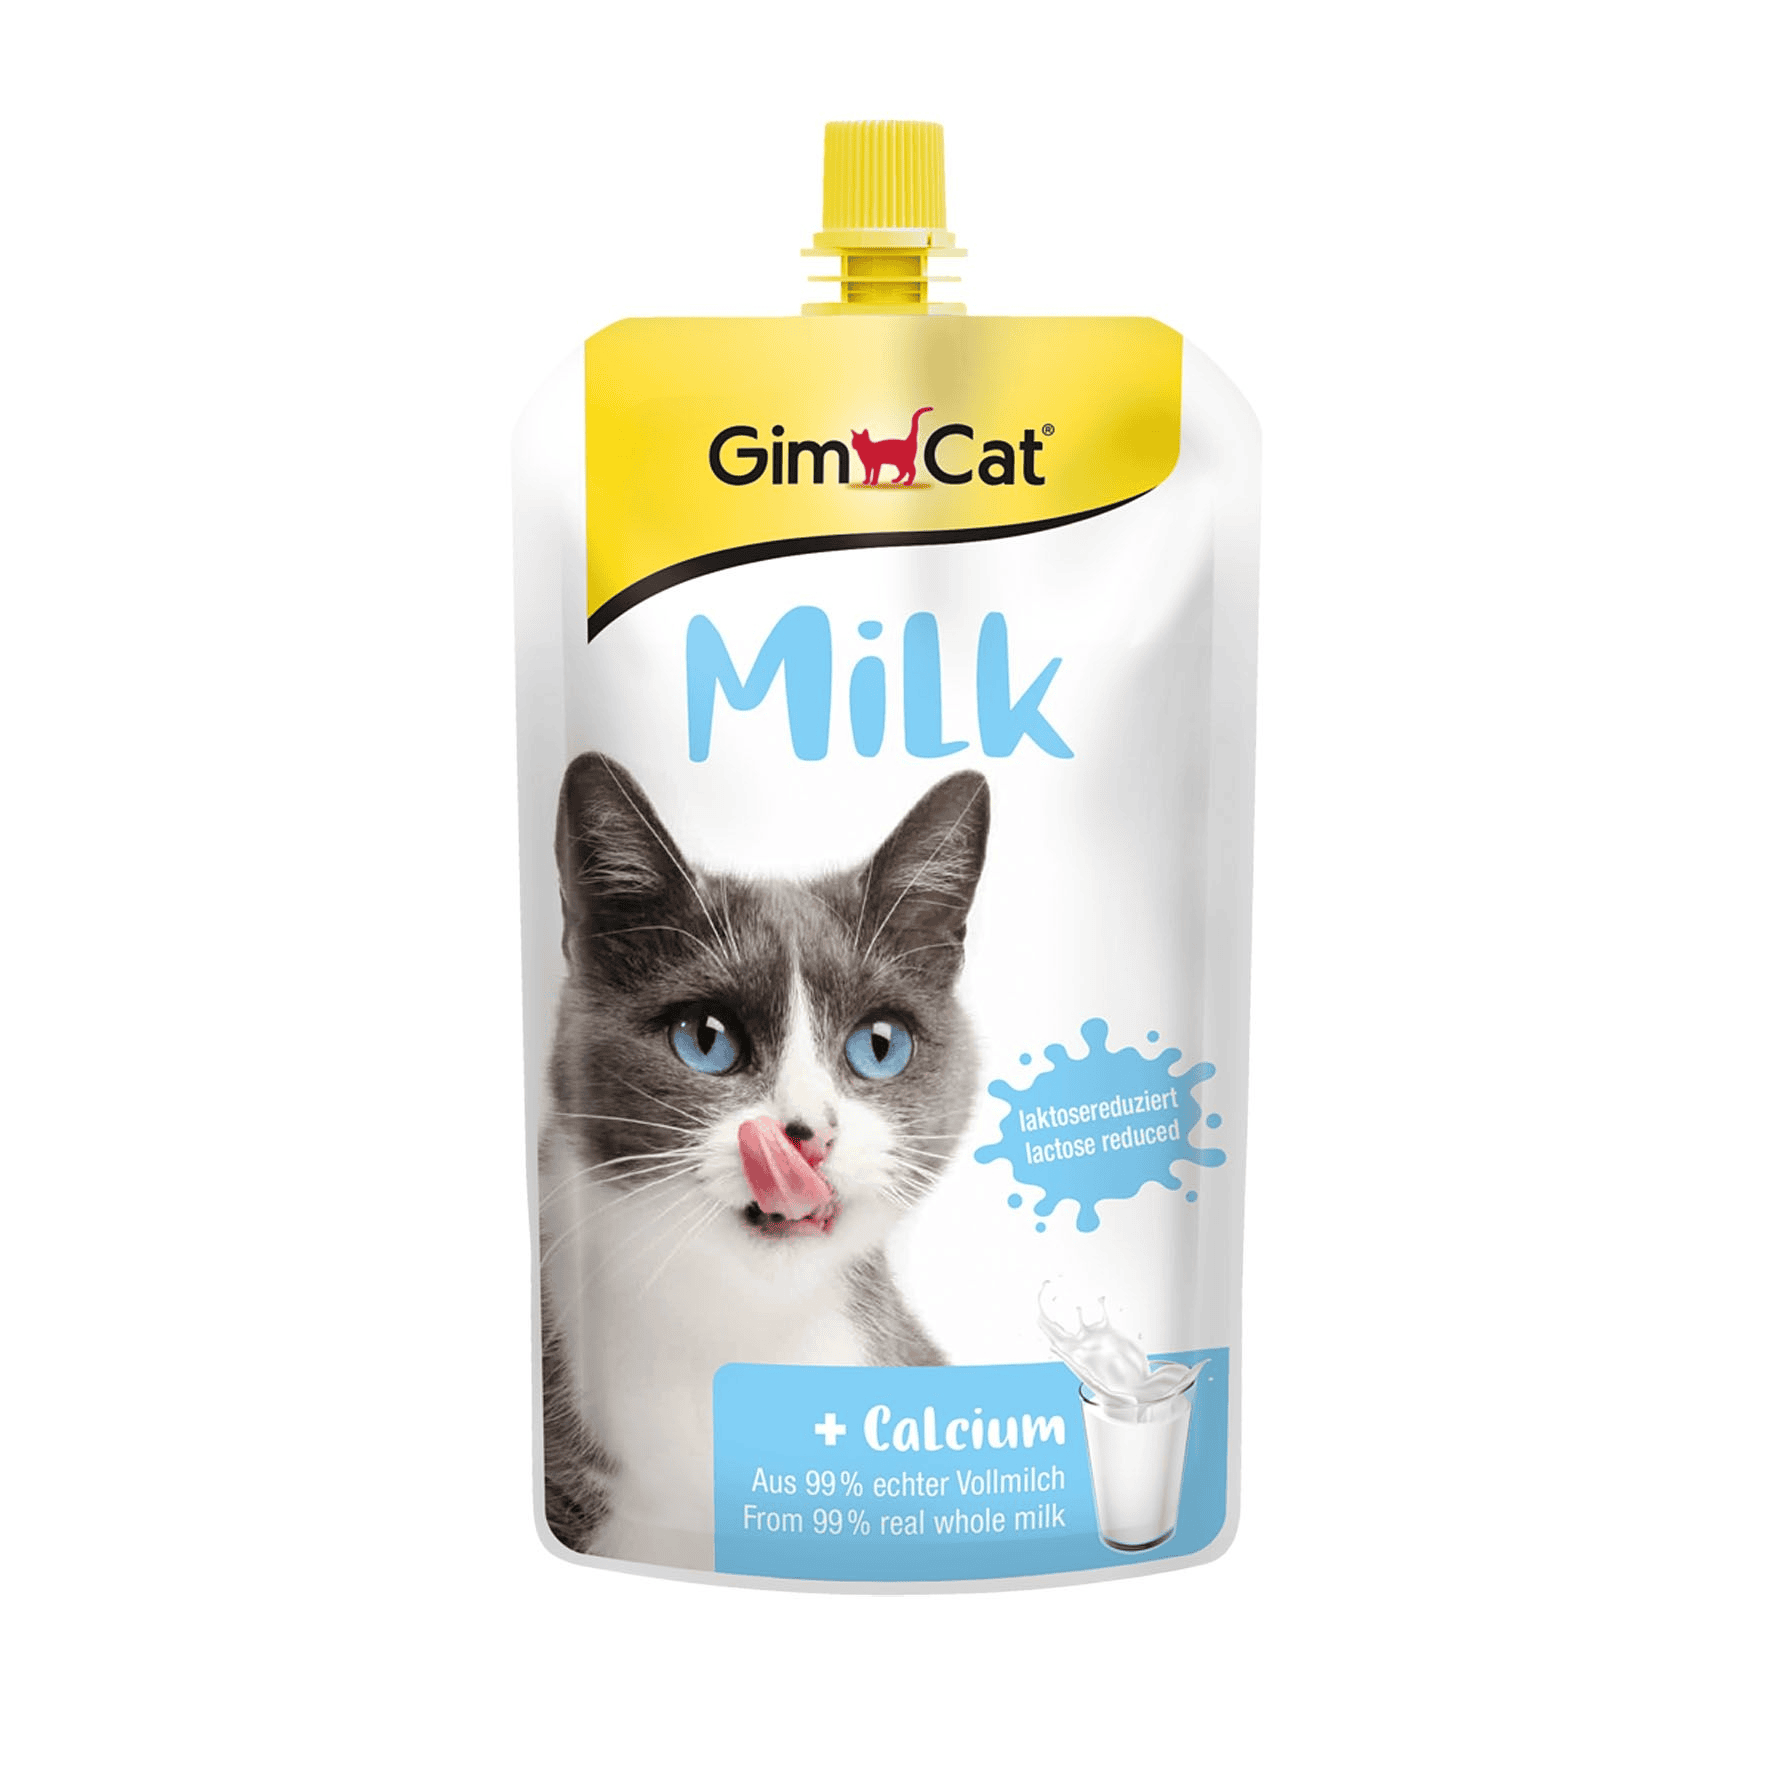 Whiskas Cat Milk rapide et à bon prix sur